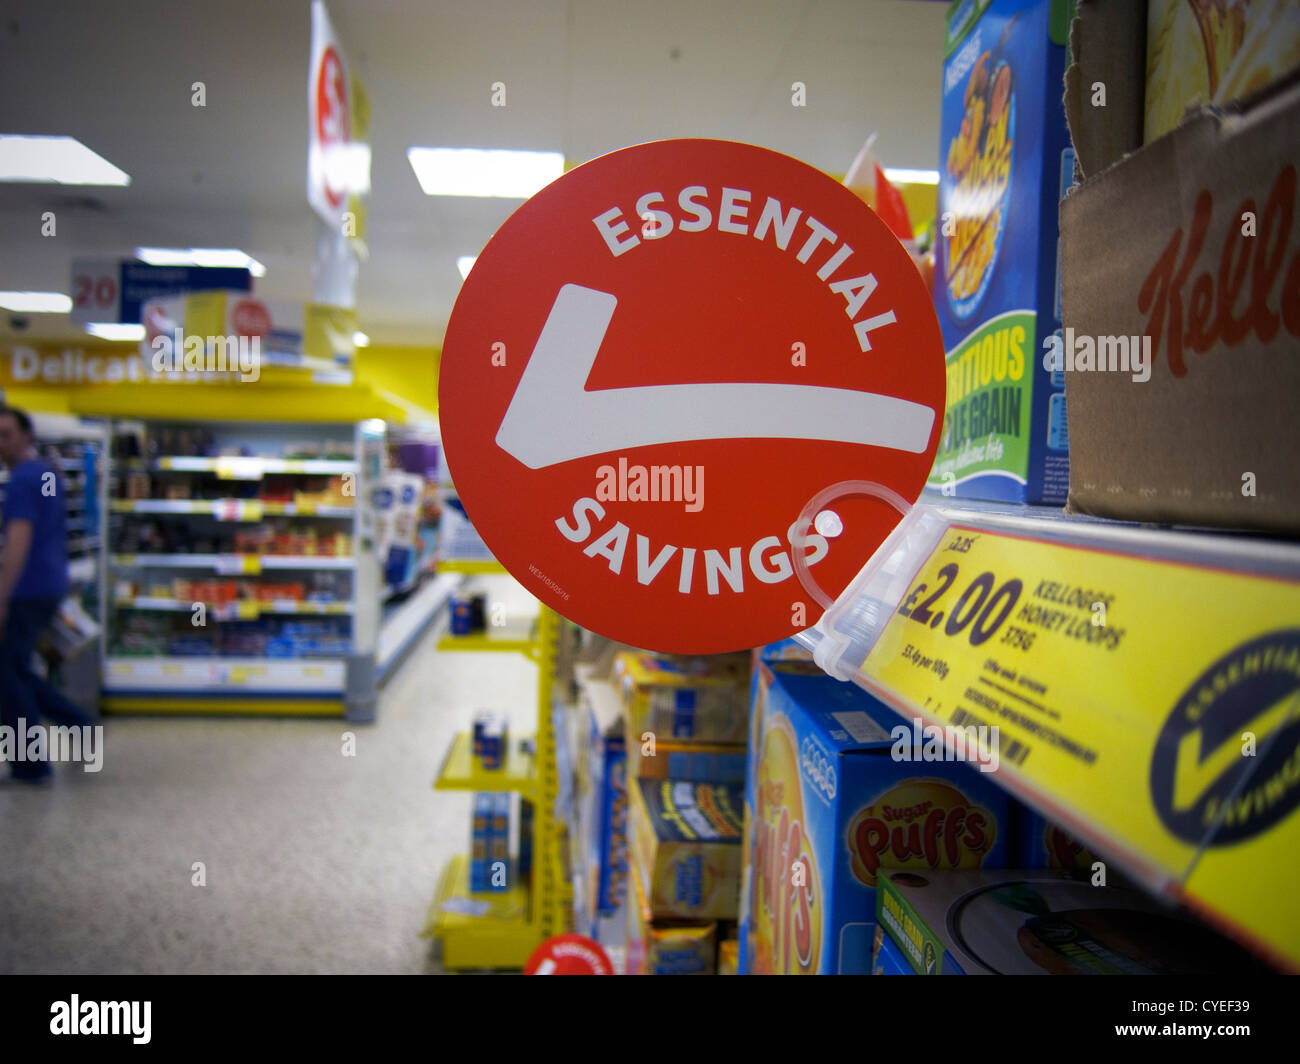 Zeichen/Beschilderung in einem Supermarkt-Geschäft in Großbritannien.  "Wesentliche Einsparungen" Sonderangebot Zeichen. Stockfoto